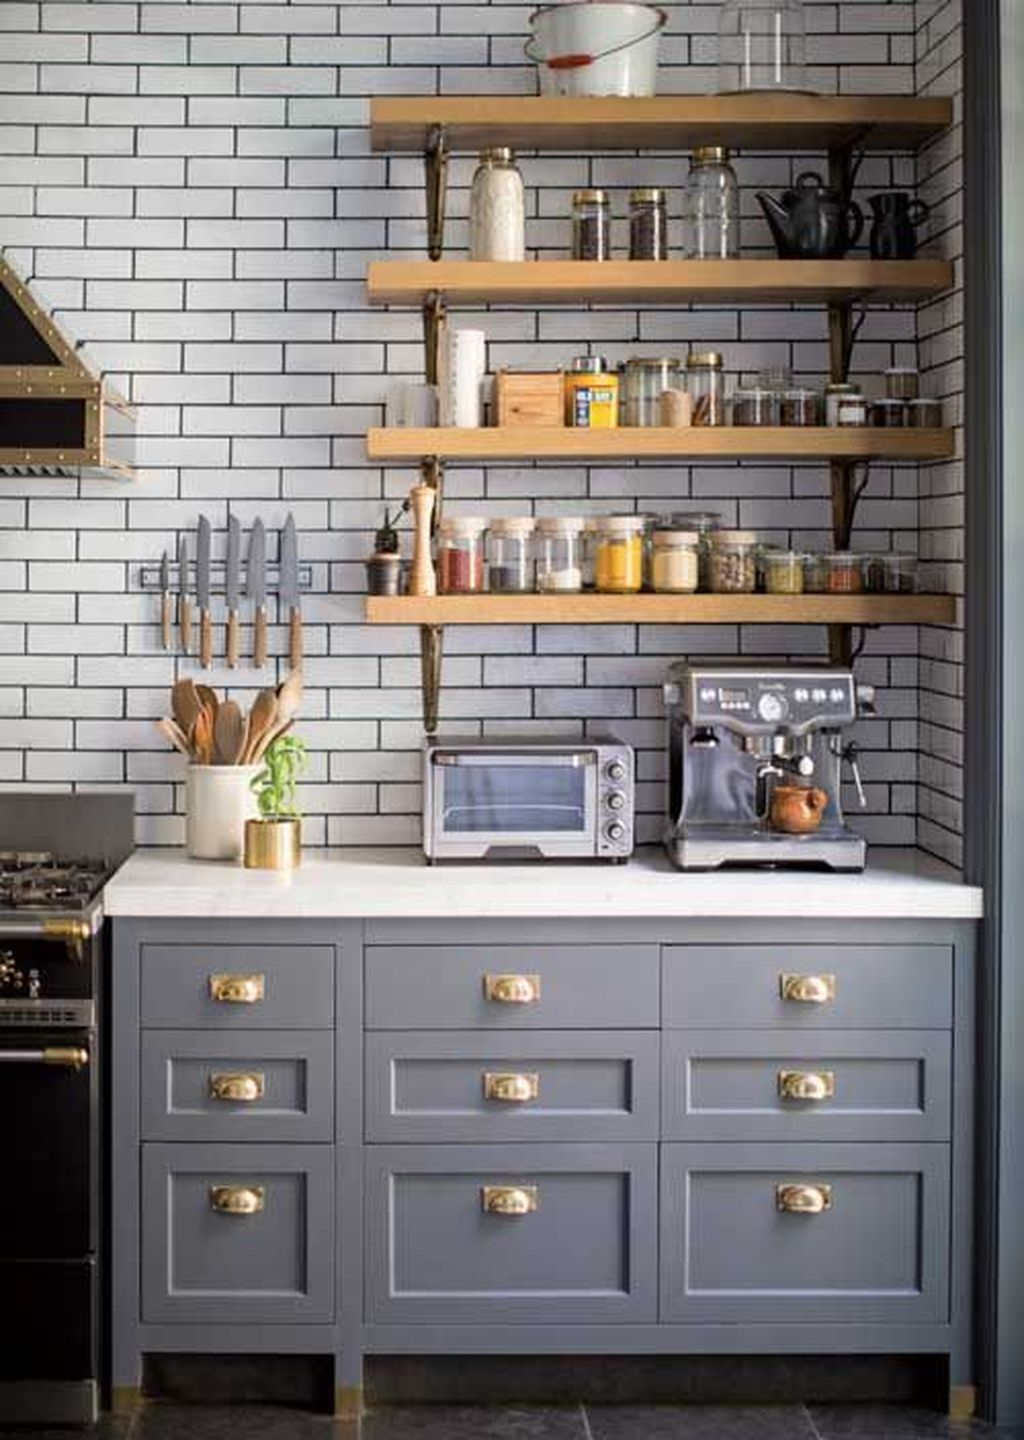 Wonderful Industrial Kitchen Shelf Design Ideas To Organize Your Kitchen31